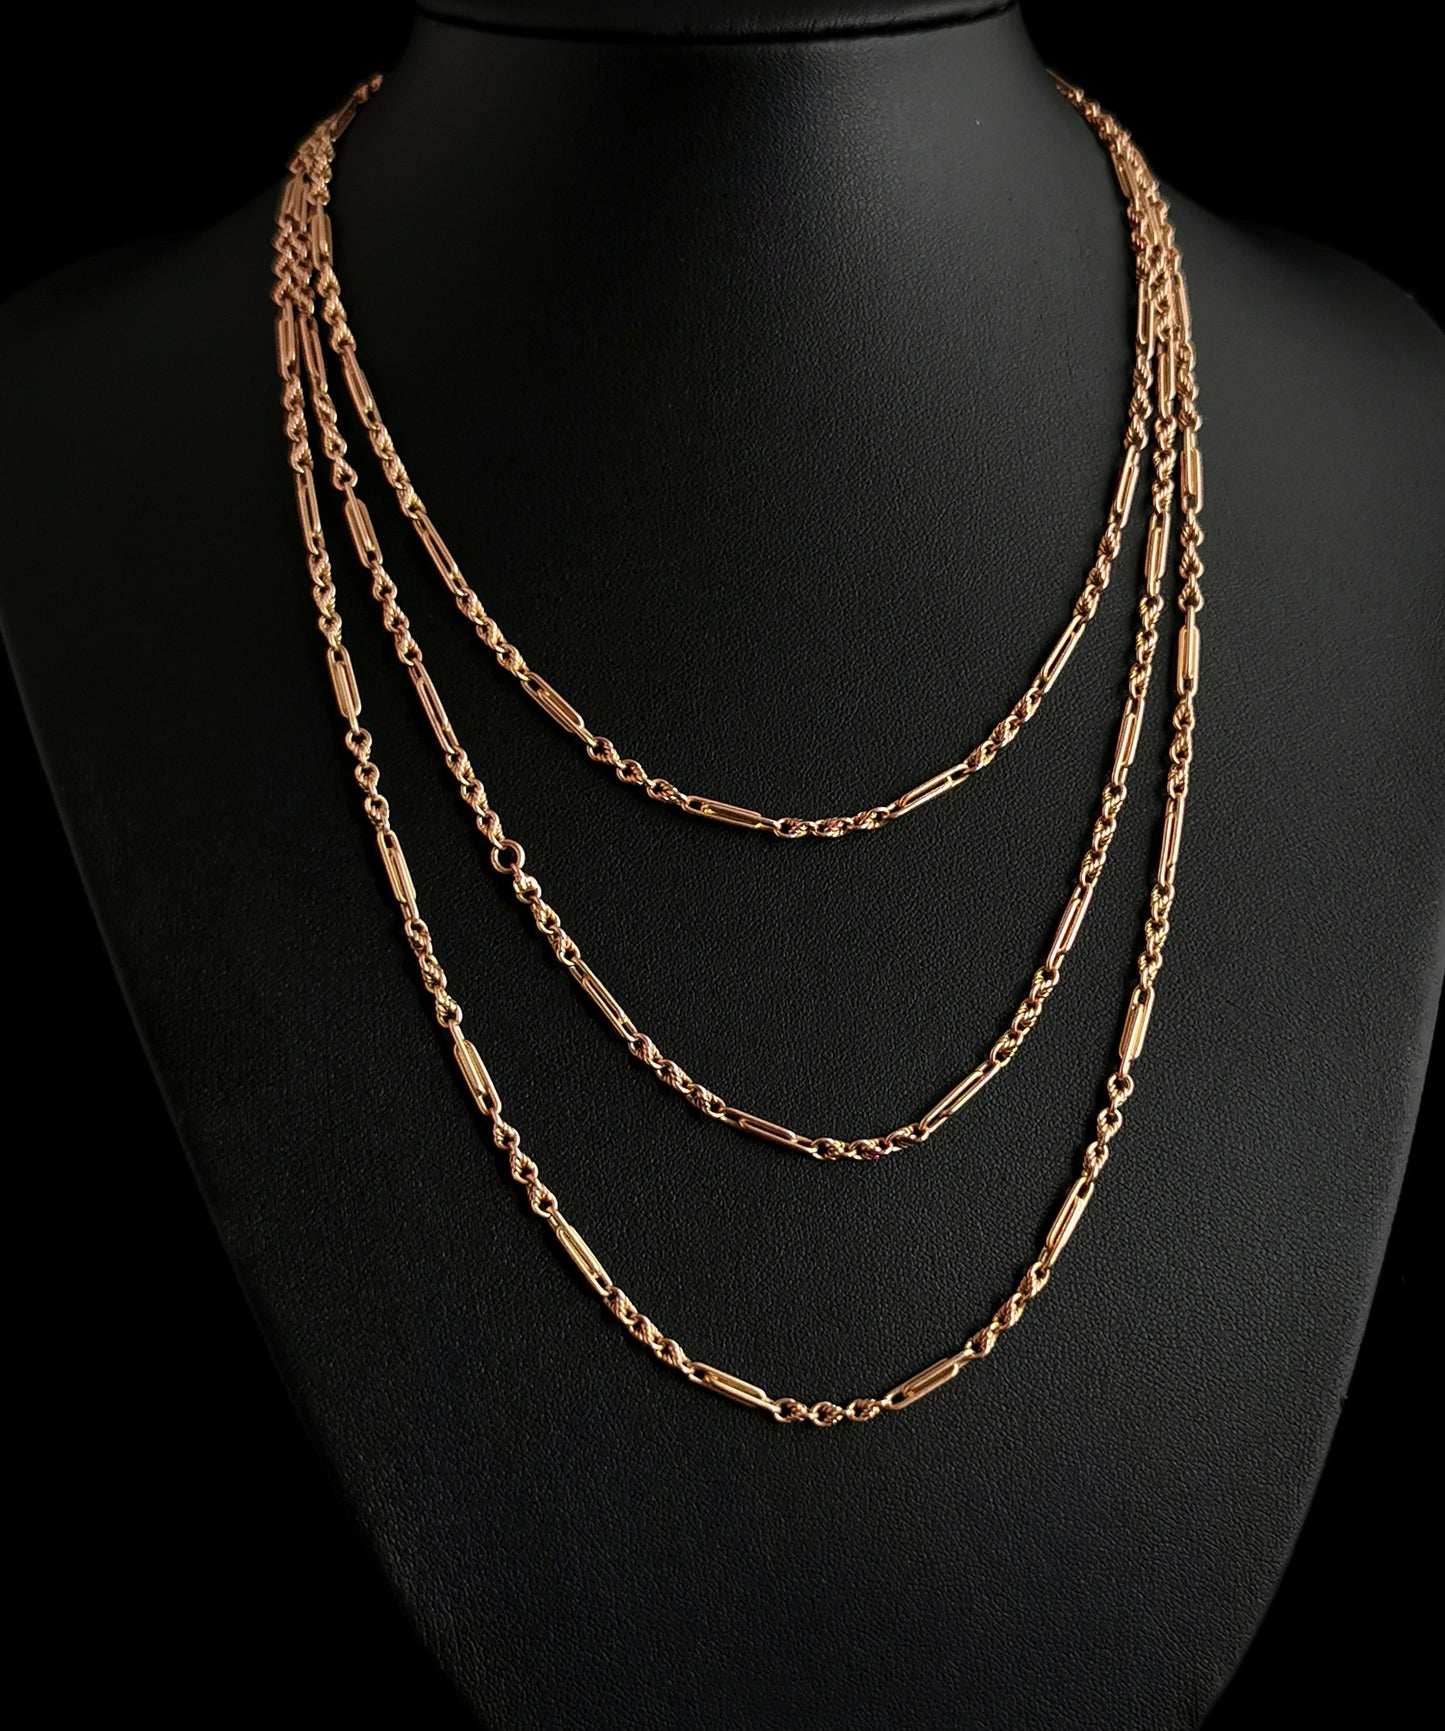 Antique Victorian 15ct longuard chain, fancy link necklace